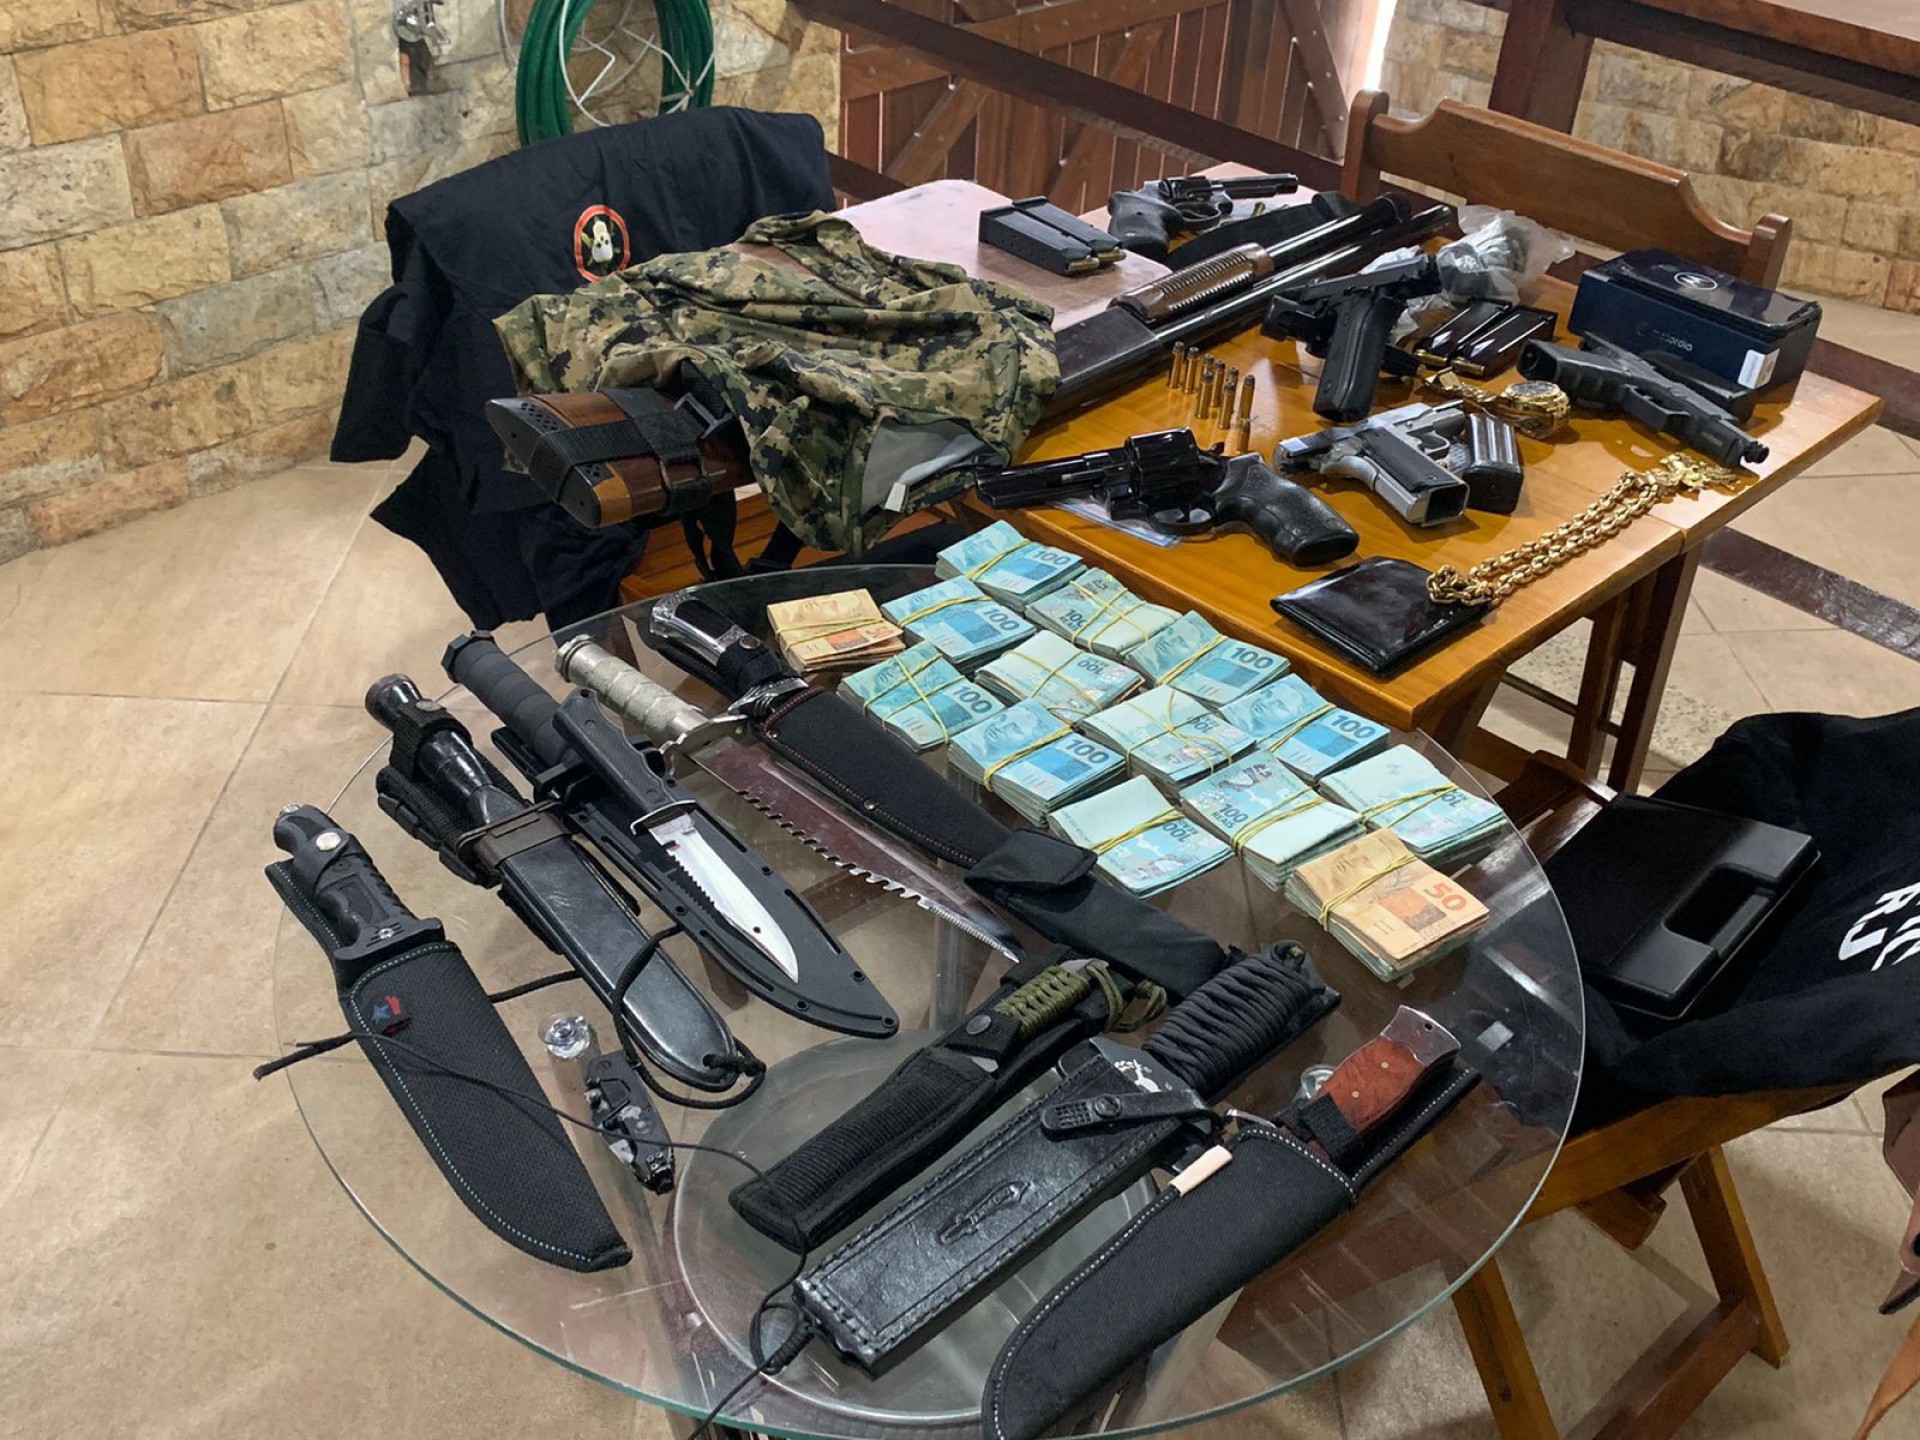 Armas, fardas e dinheiro foram encontrados na casa de Badaró, segurança de miliciano - Divulgação